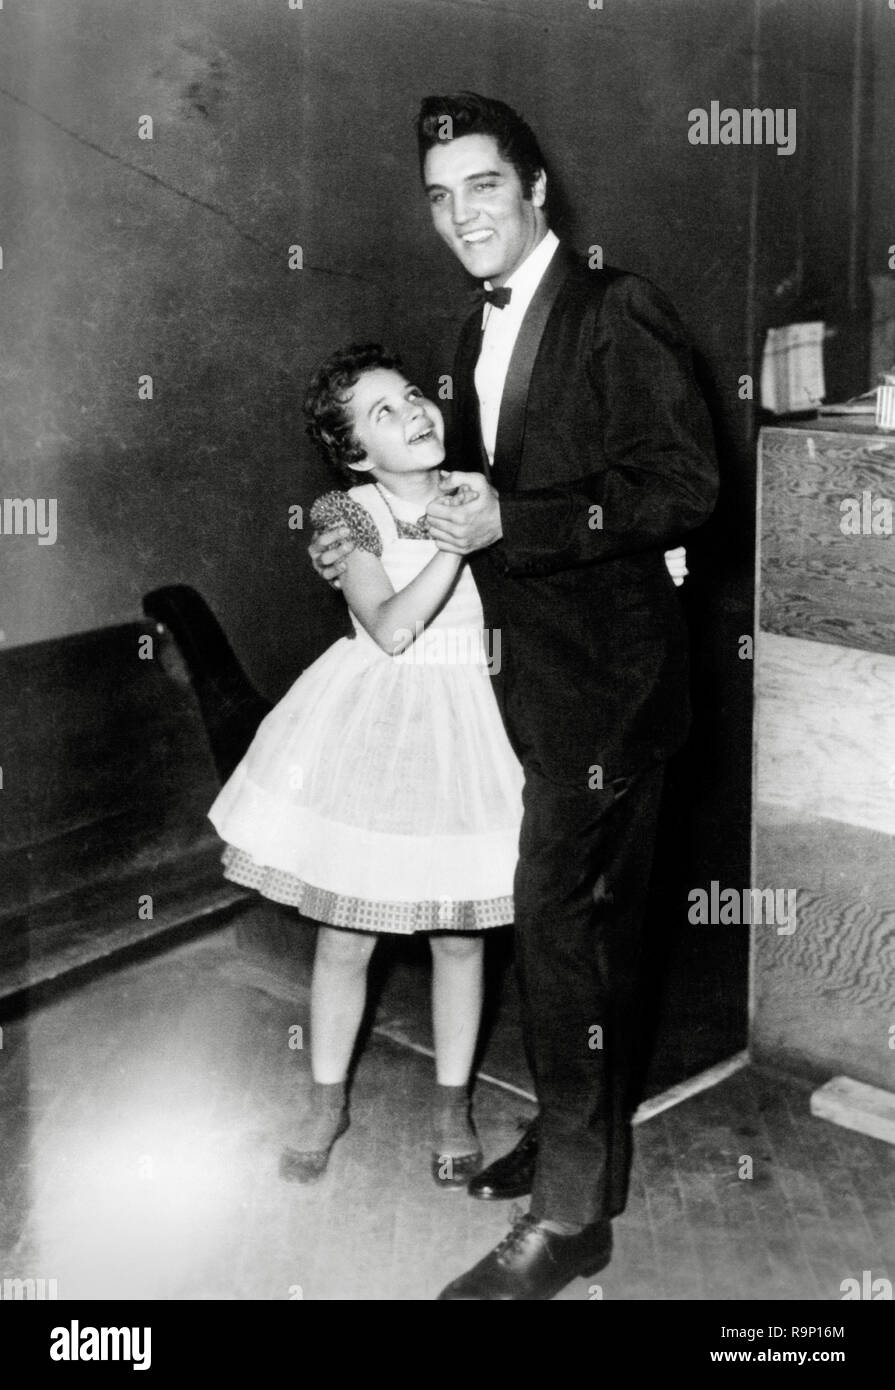 Elvis Presley, Tanzen mit einem jungen Fan, ca. 1956 Datei Referenz # 33635 677THA Stockfoto